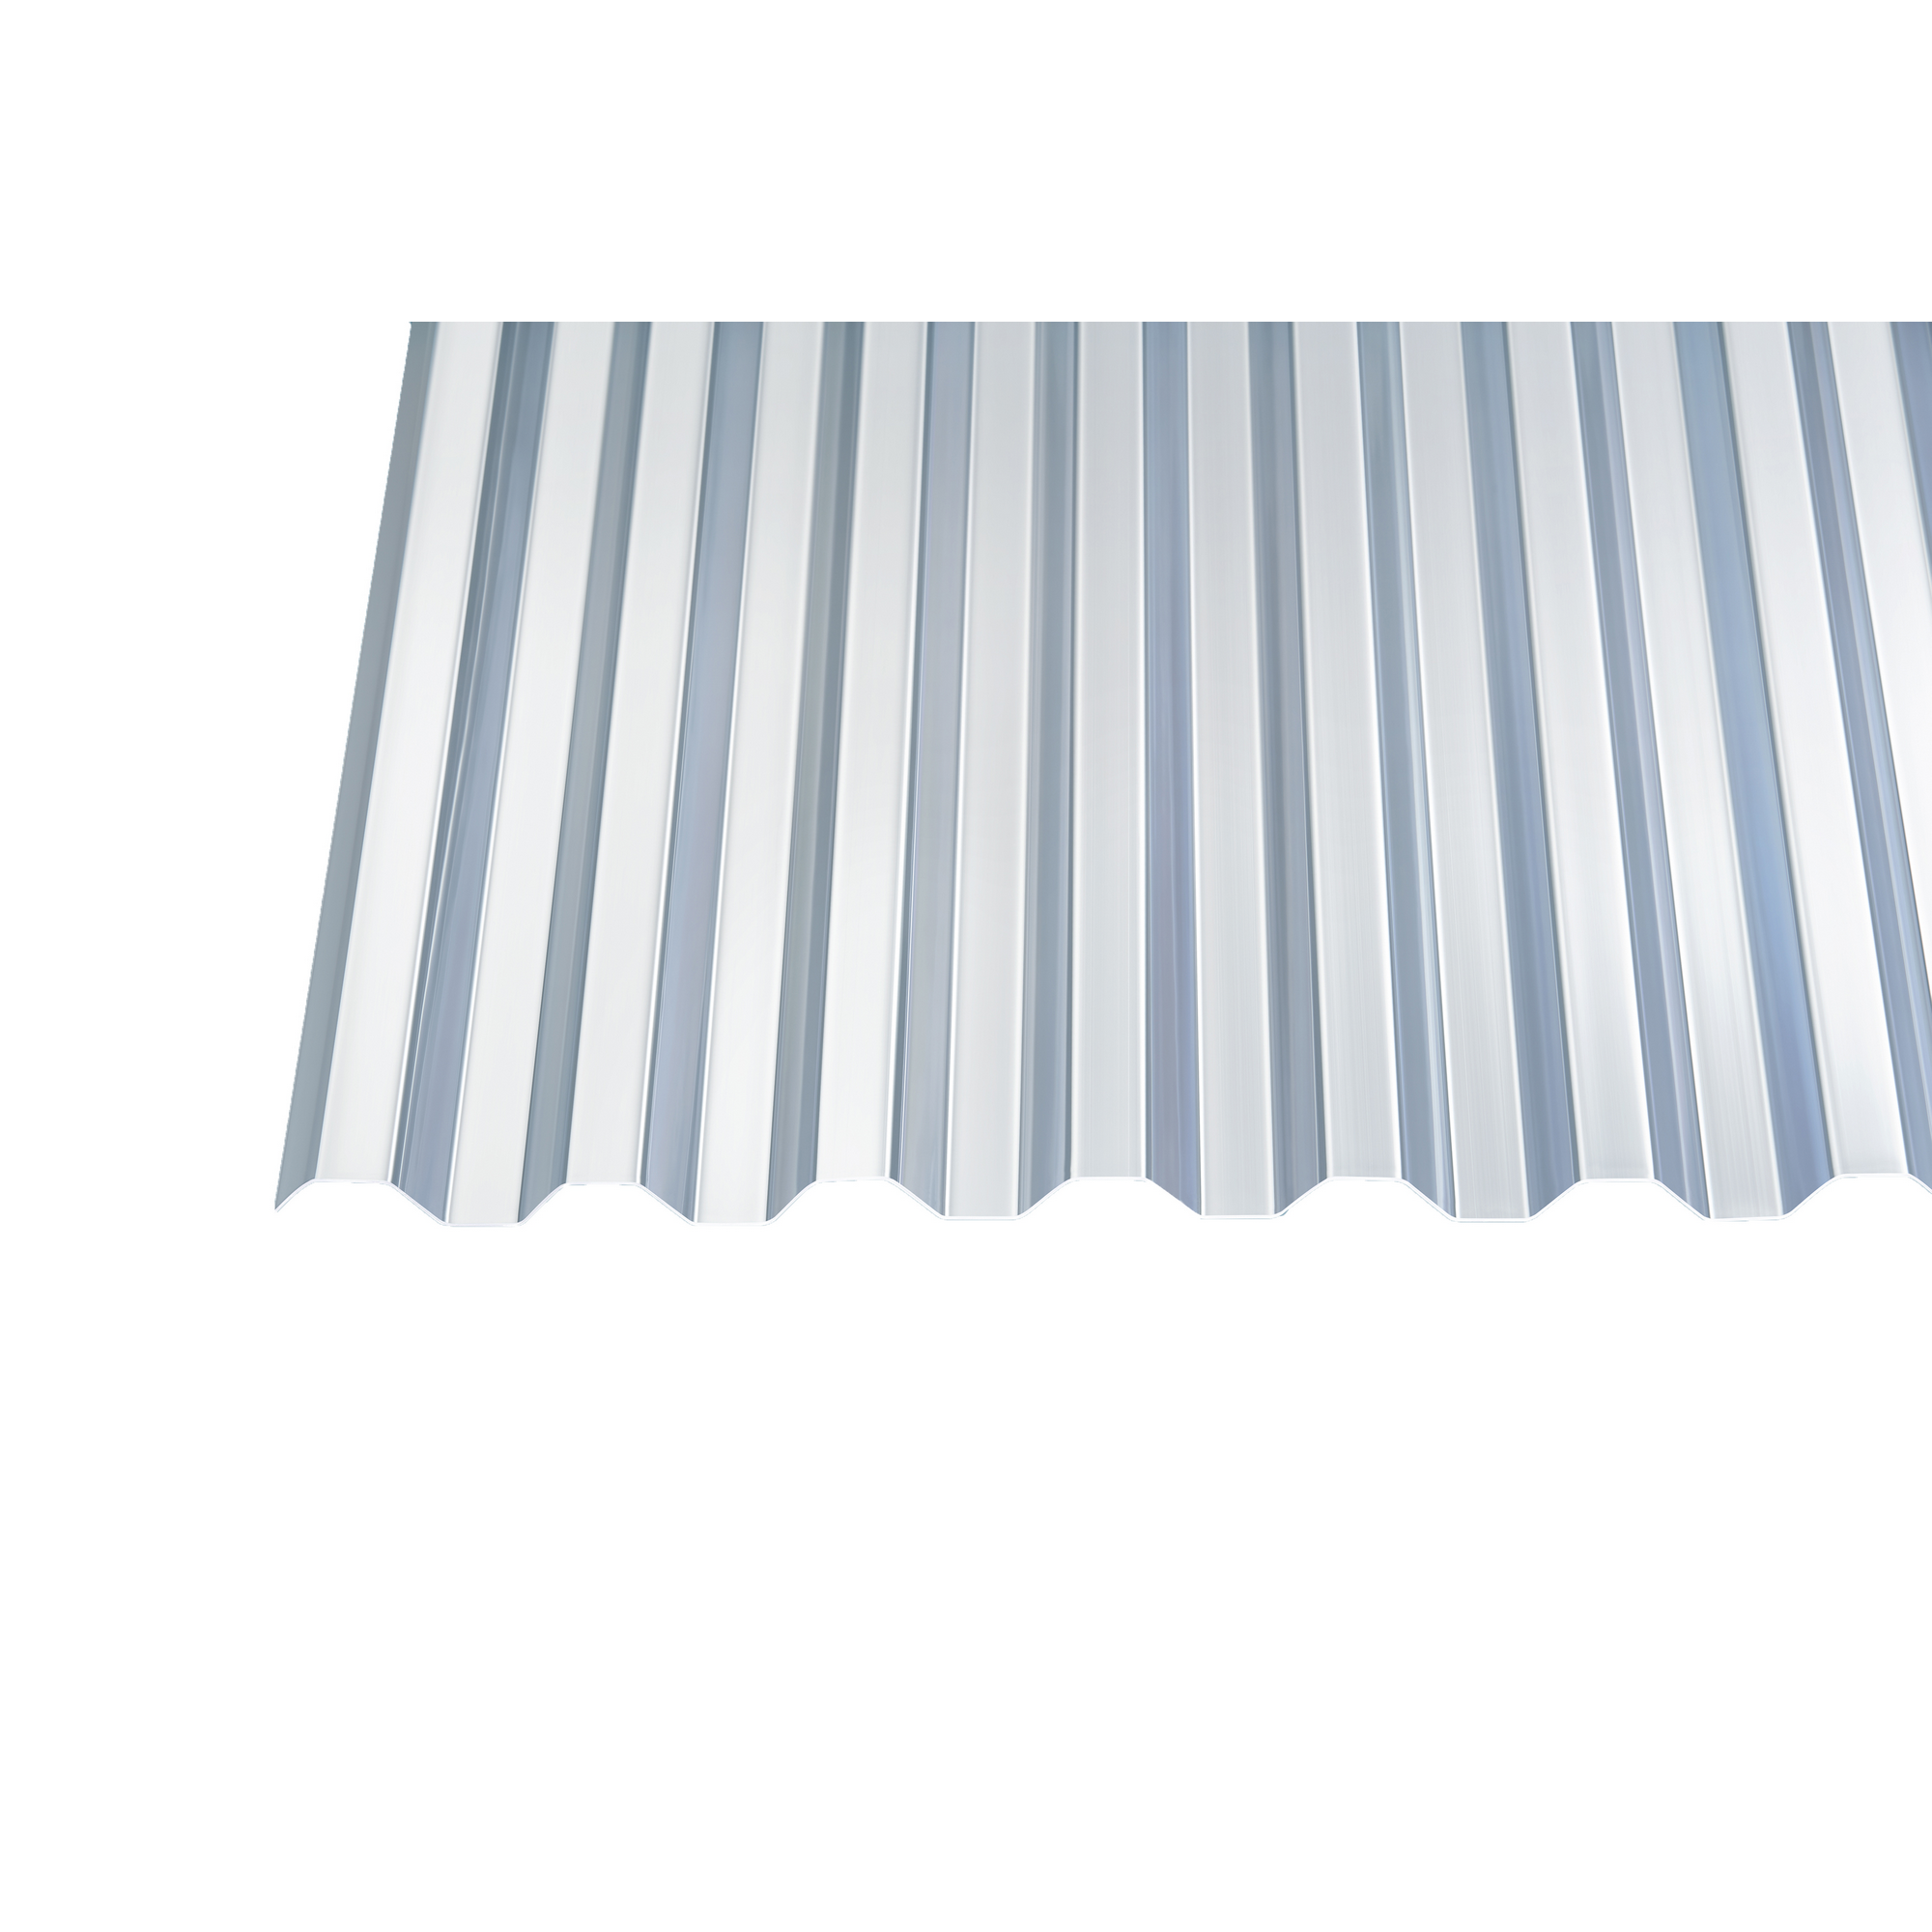 PVC-Wellplatte 'Trapez 70/18' klar 200 x 90 x 0,07 cm + product picture